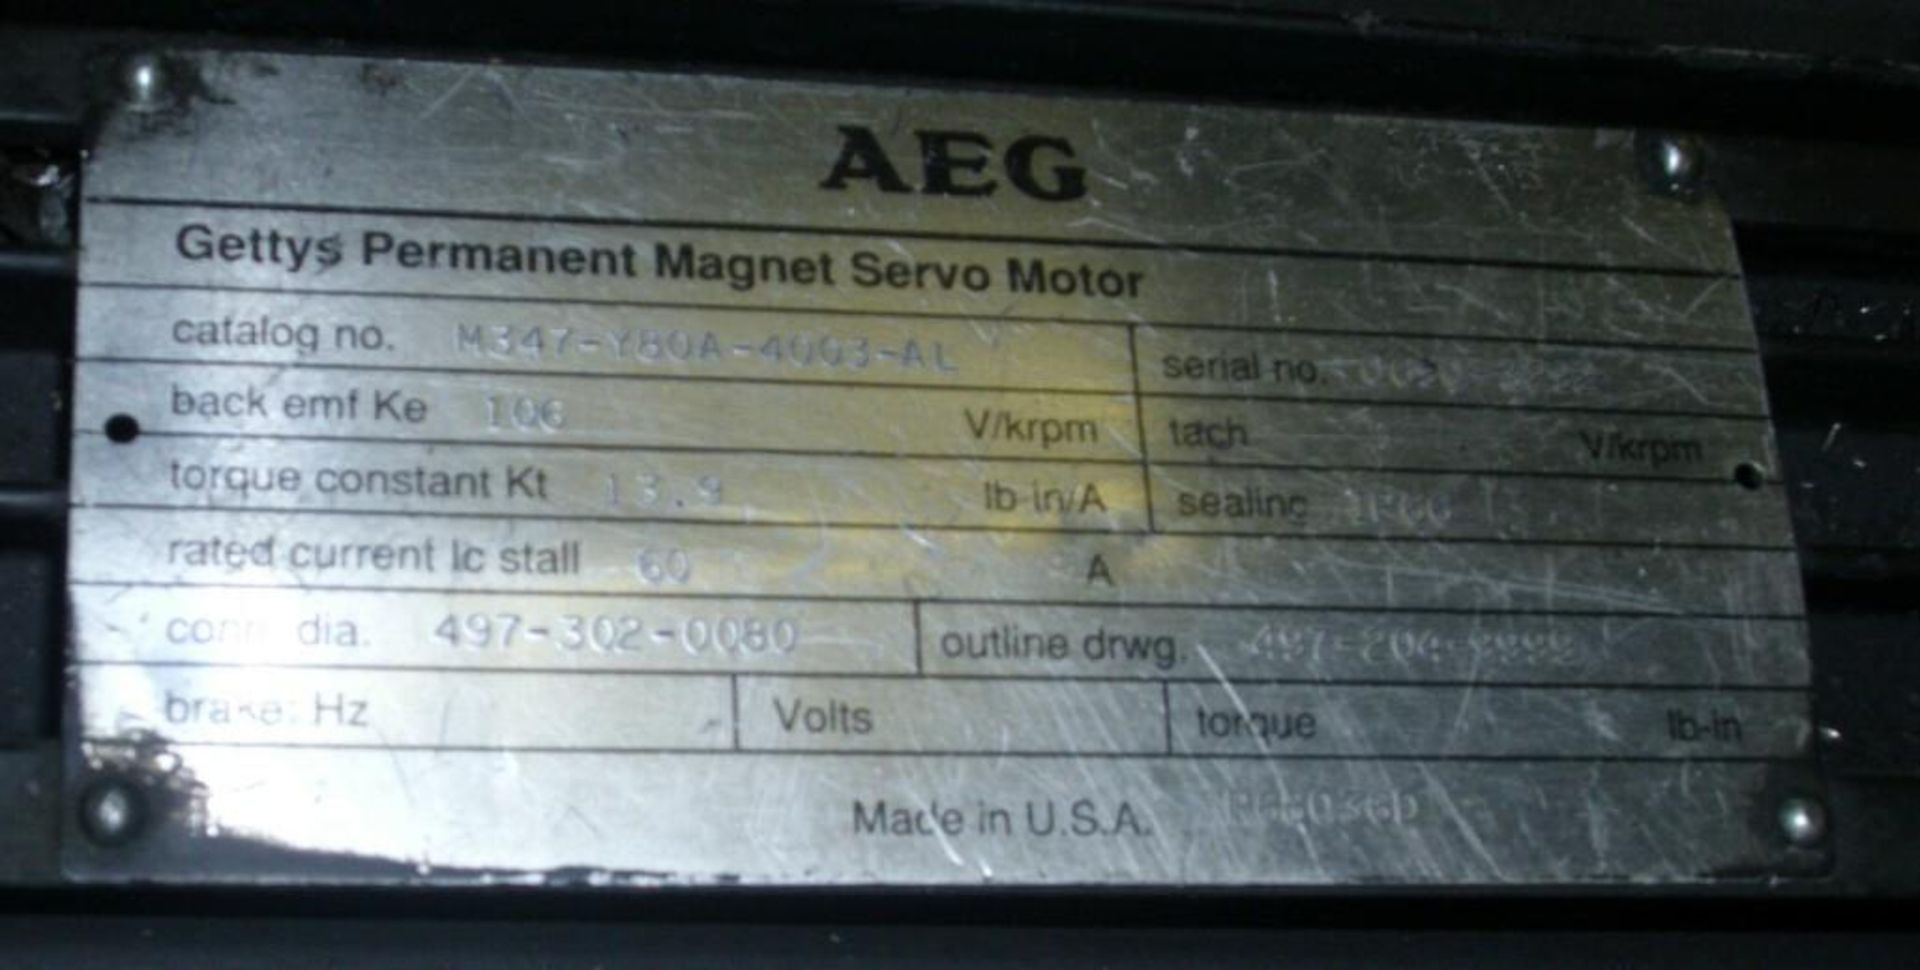 AEG / Getty's # M347-Y80A-4003-AL Permanent Magnet Servo Motor, - Image 4 of 4